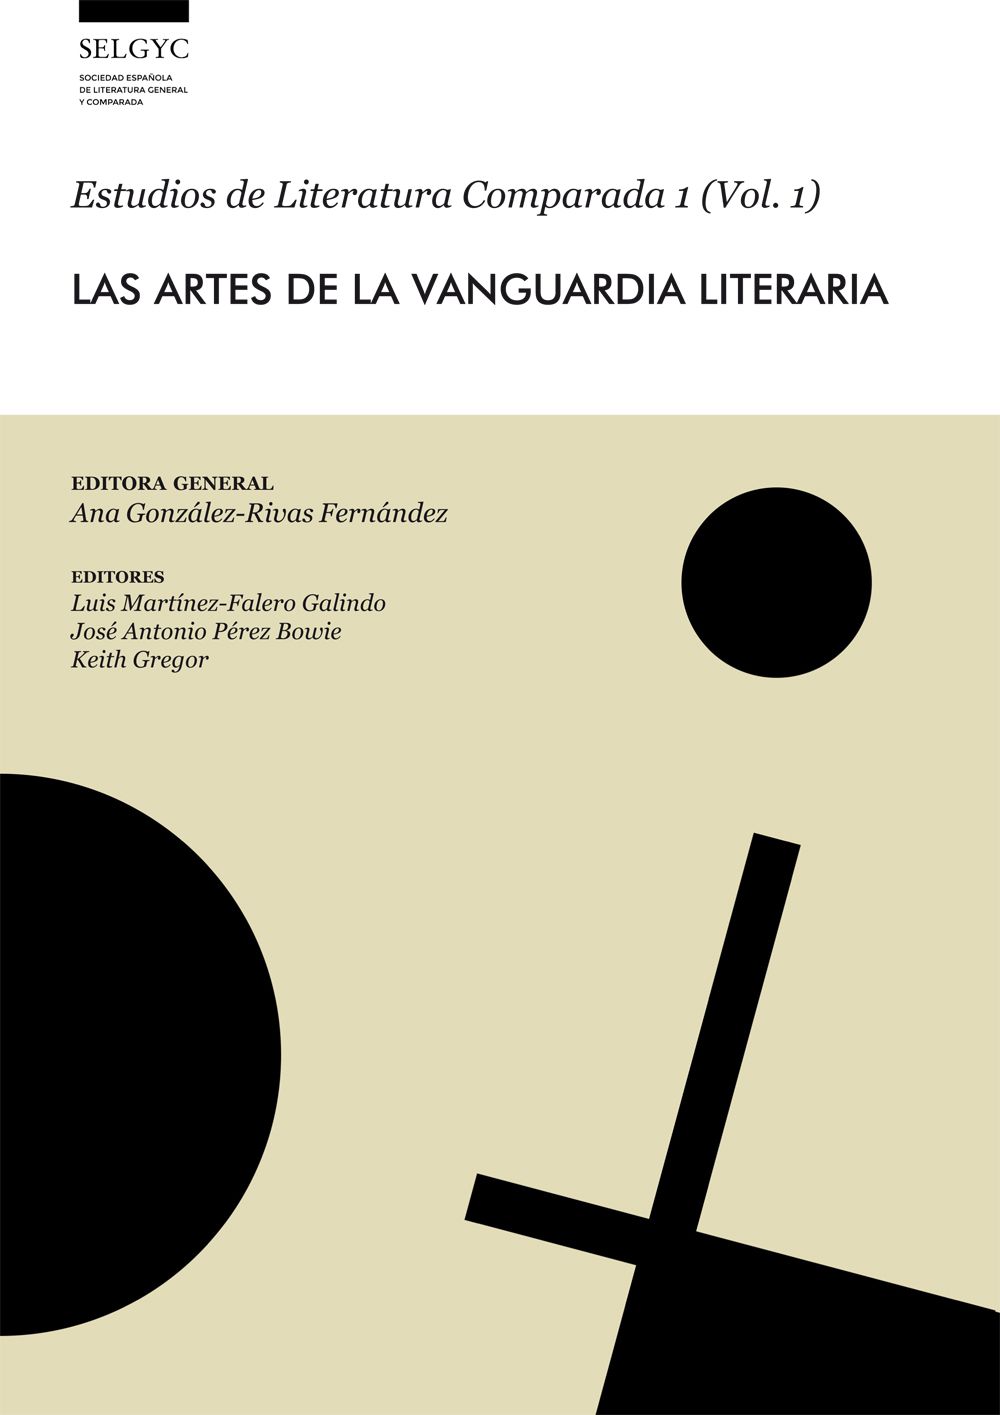 Las Artes de la Vanguardia Literaria